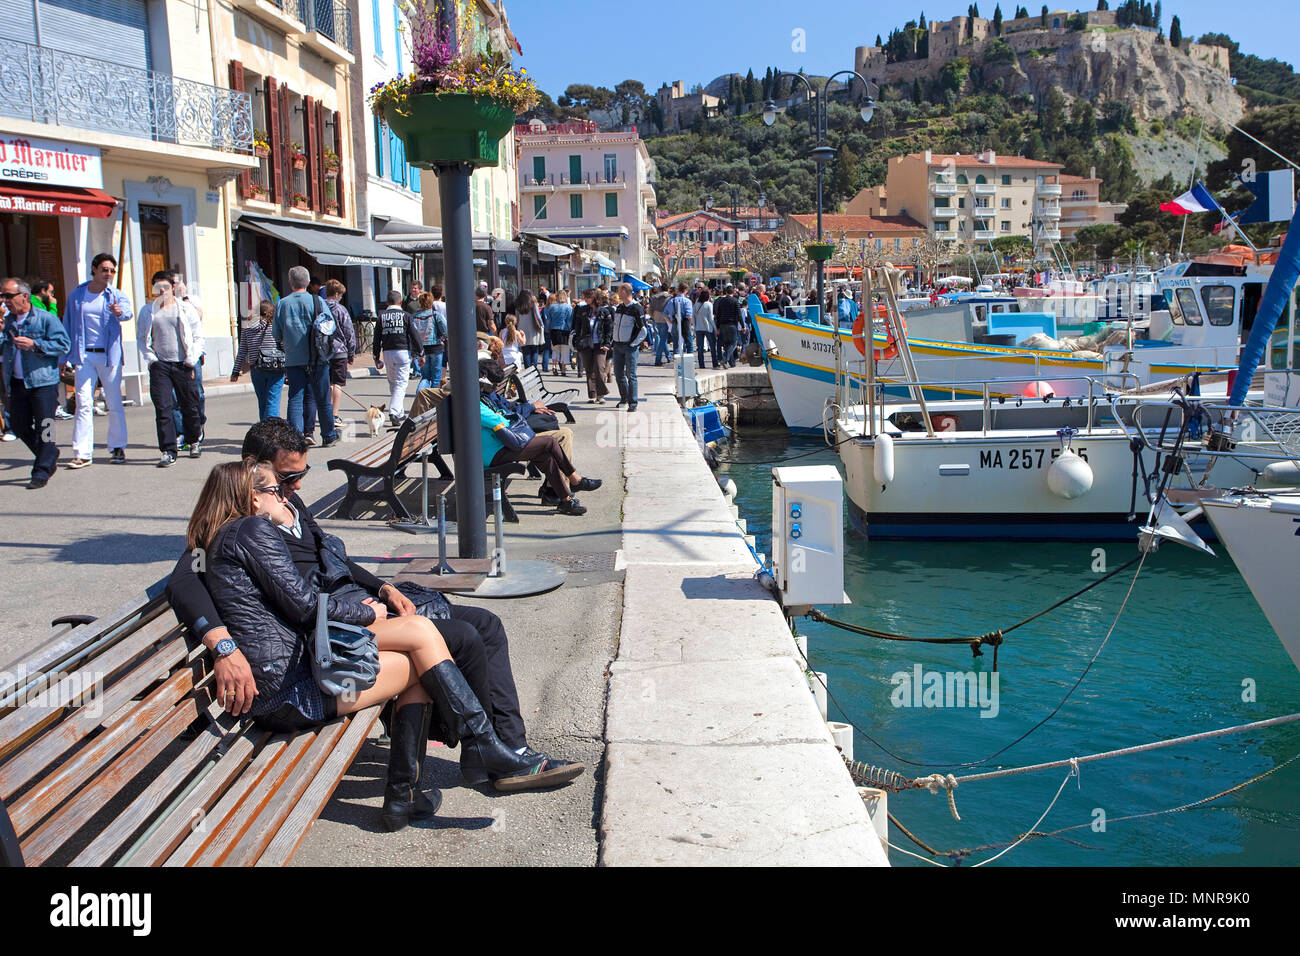 Die Menschen auf den Bänken am Hafen von Cassis, Bouches-du-Rhône der Region Provence-Alpes-Côte d'Azur, Südfrankreich, Frankreich, Europa Stockfoto